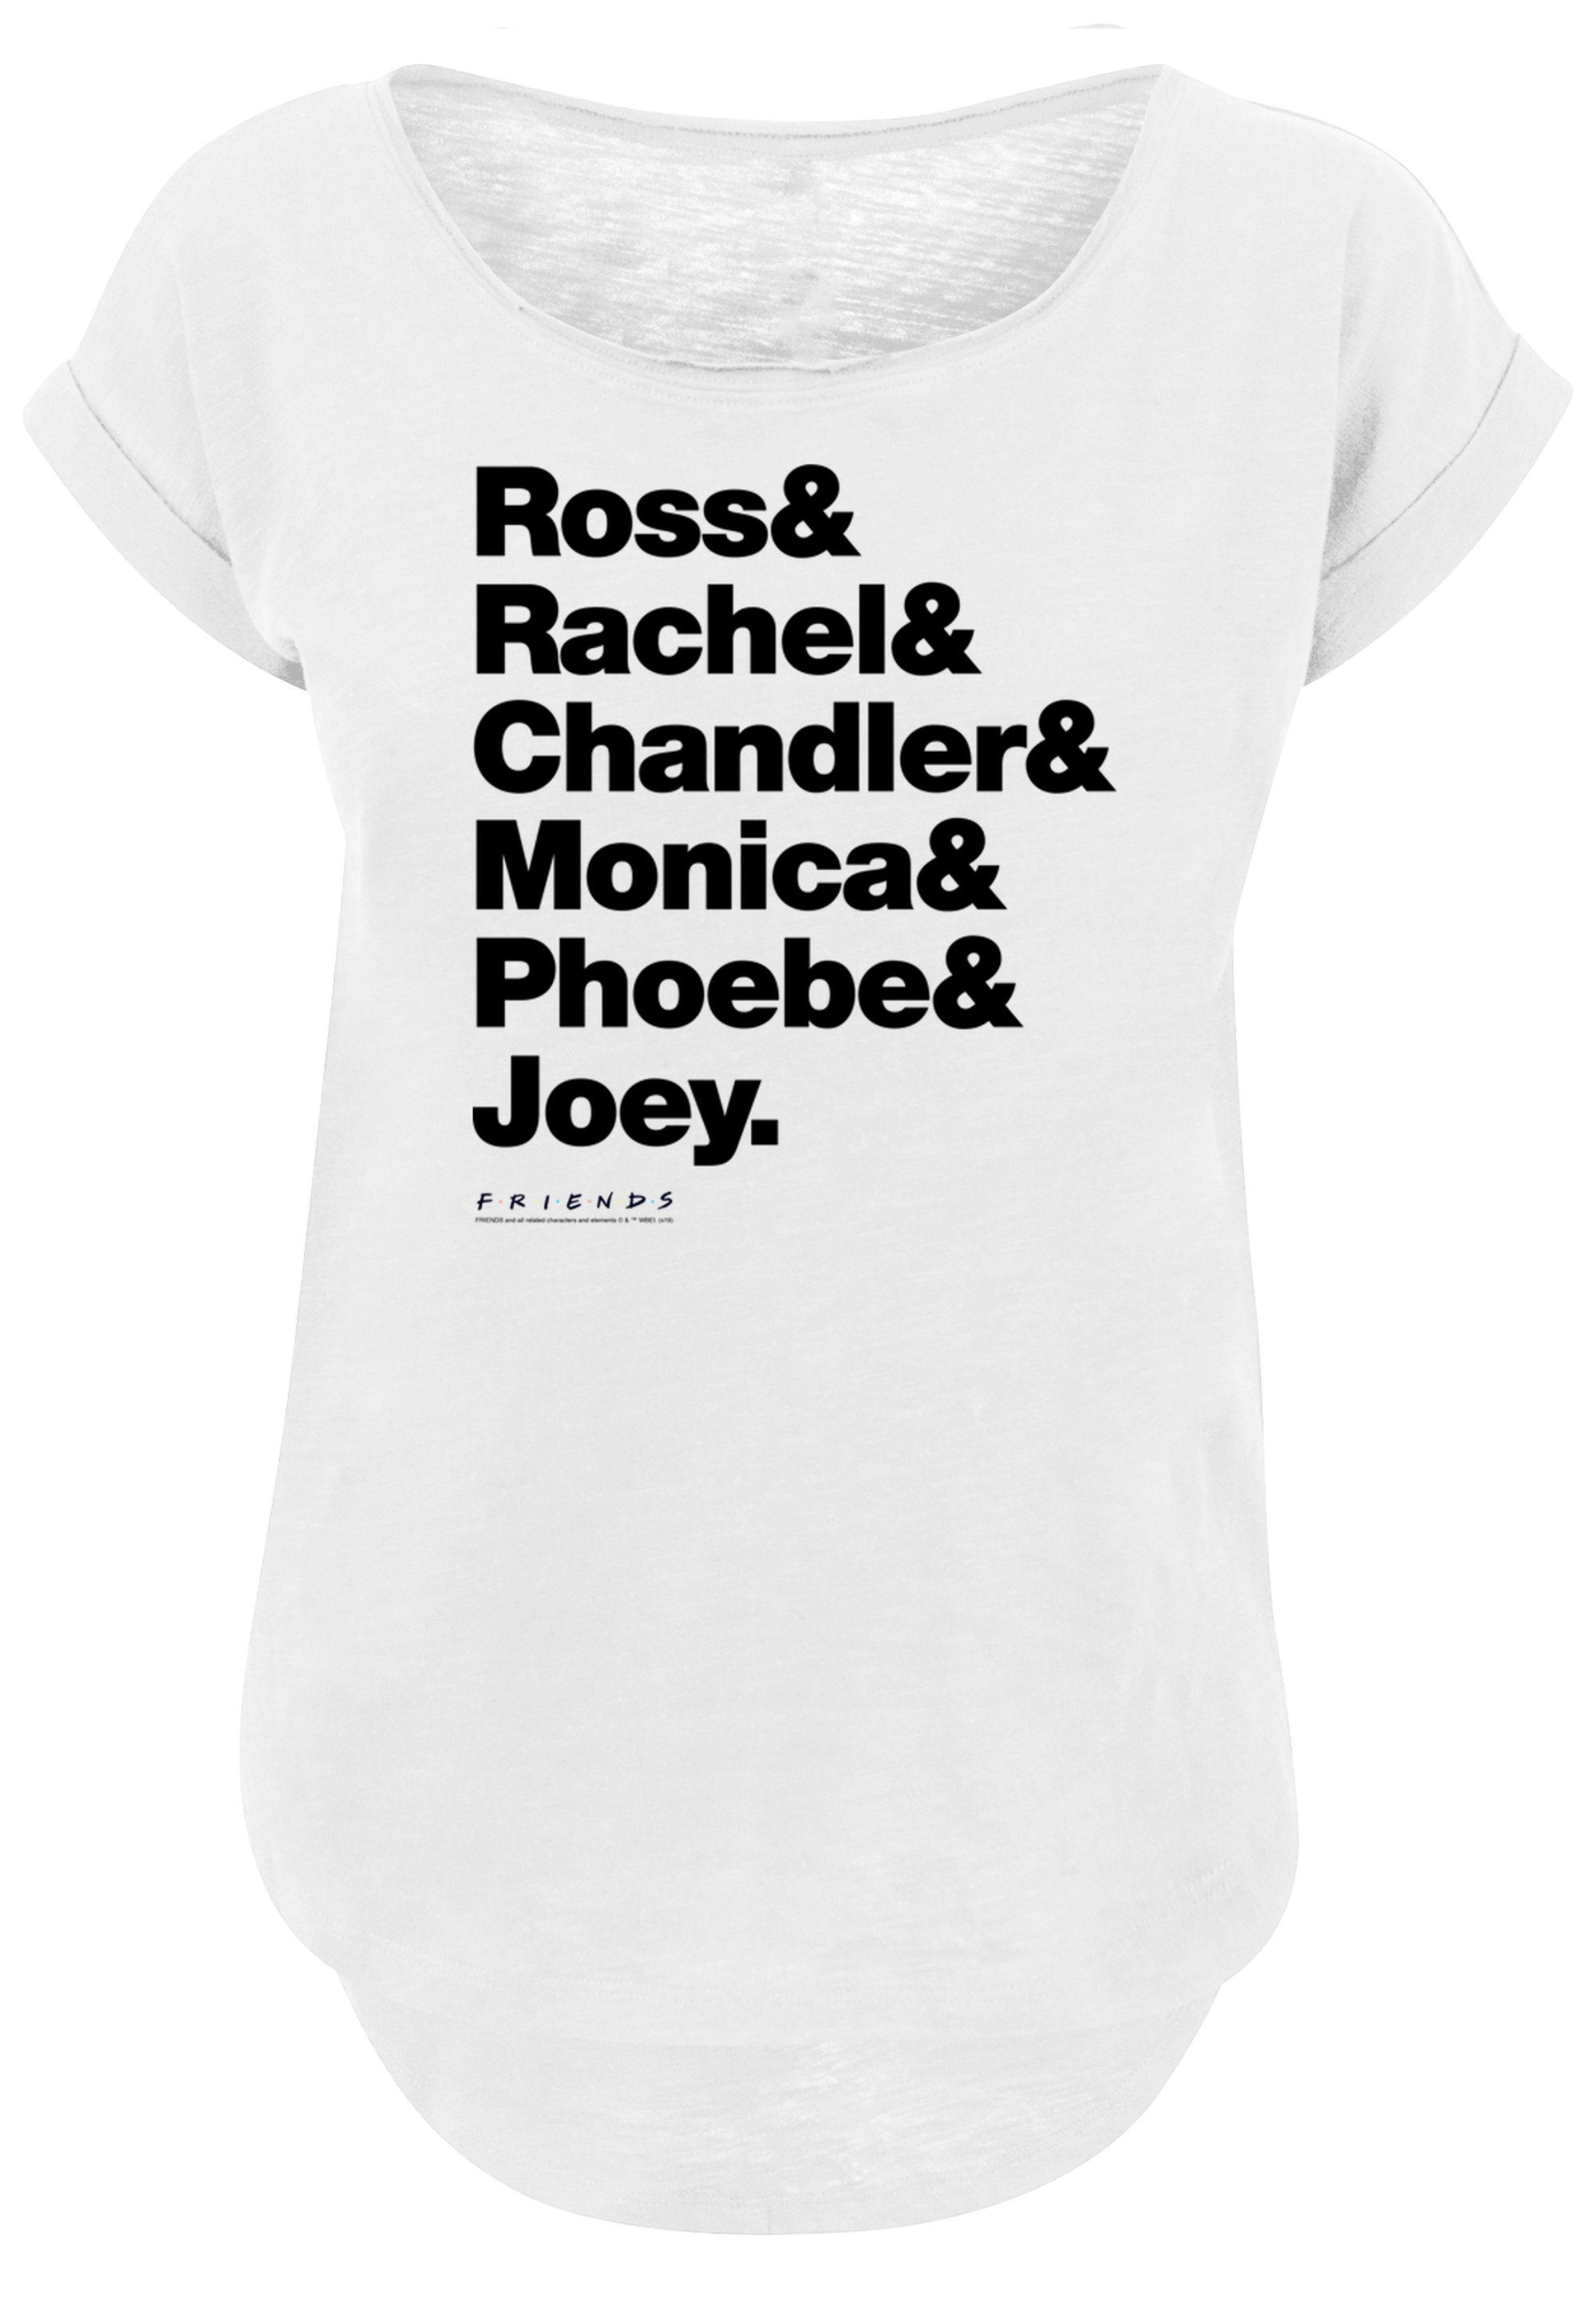 F4NT4STIC & & T-Shirt Joey Chandler & Rachel & & Monica Ross Phoebe Print FRIENDS